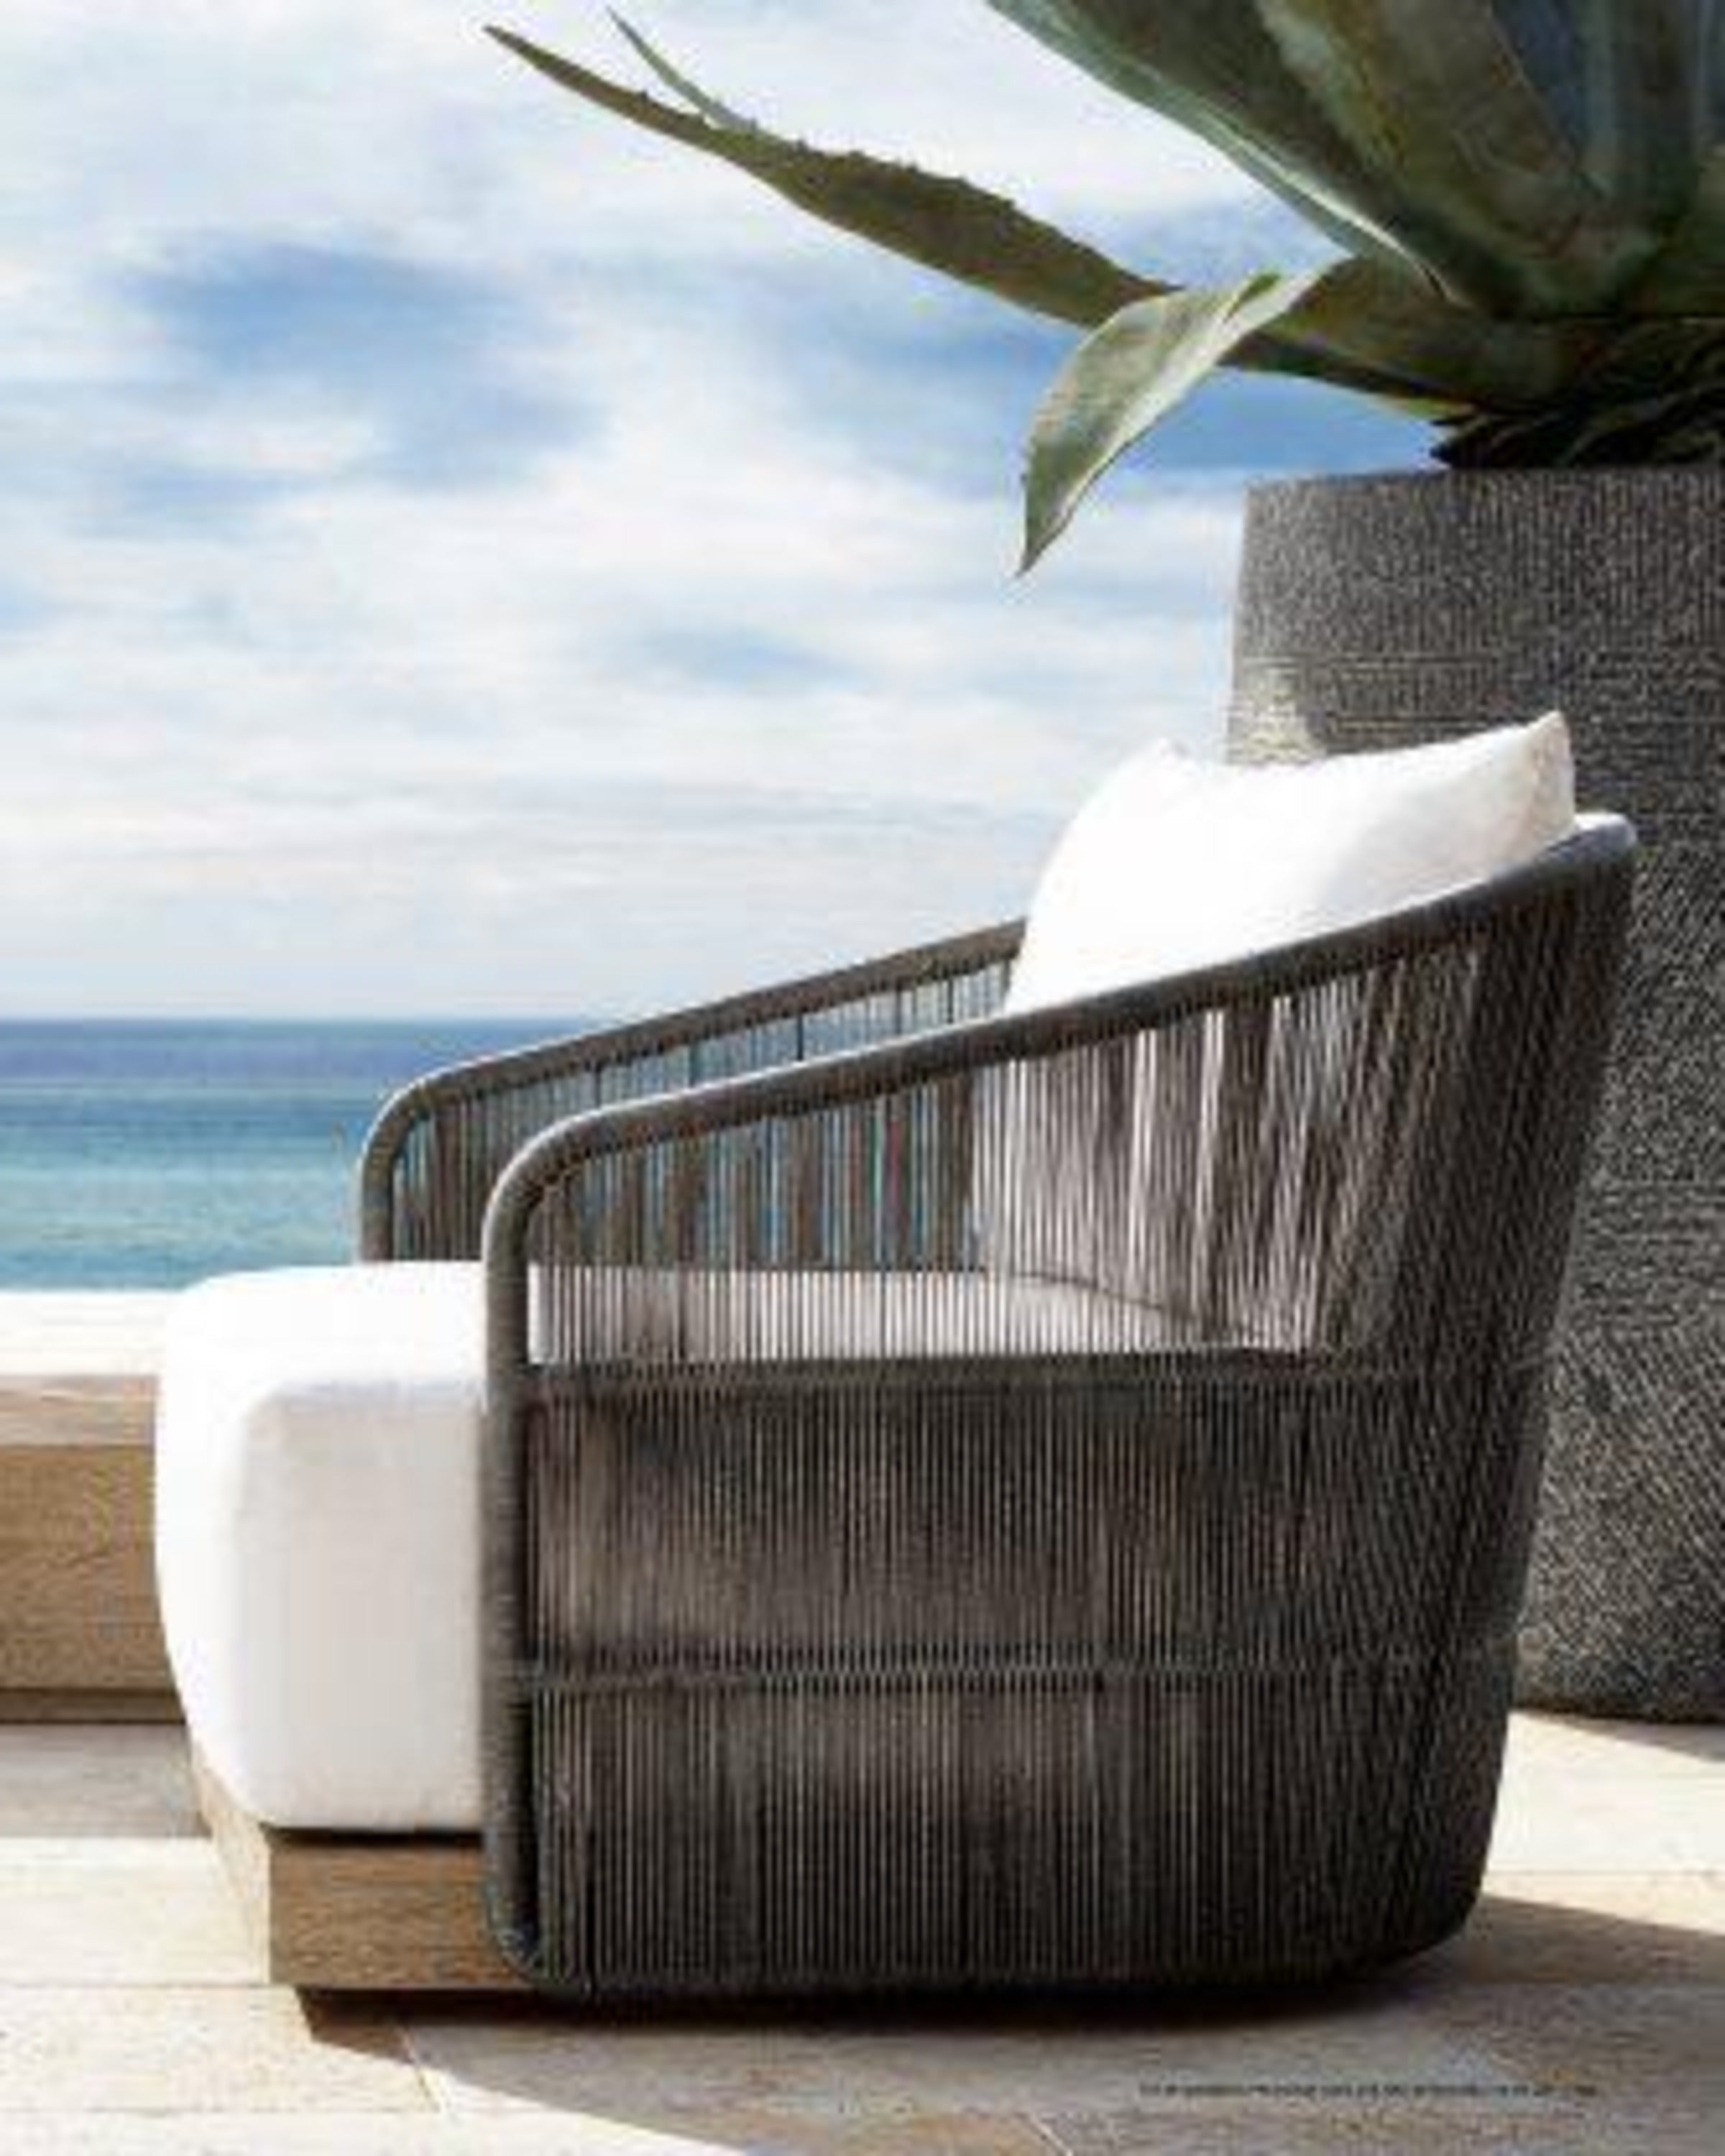 Zenith Zen Outdoor Sofa Chair ANGIE HOMES